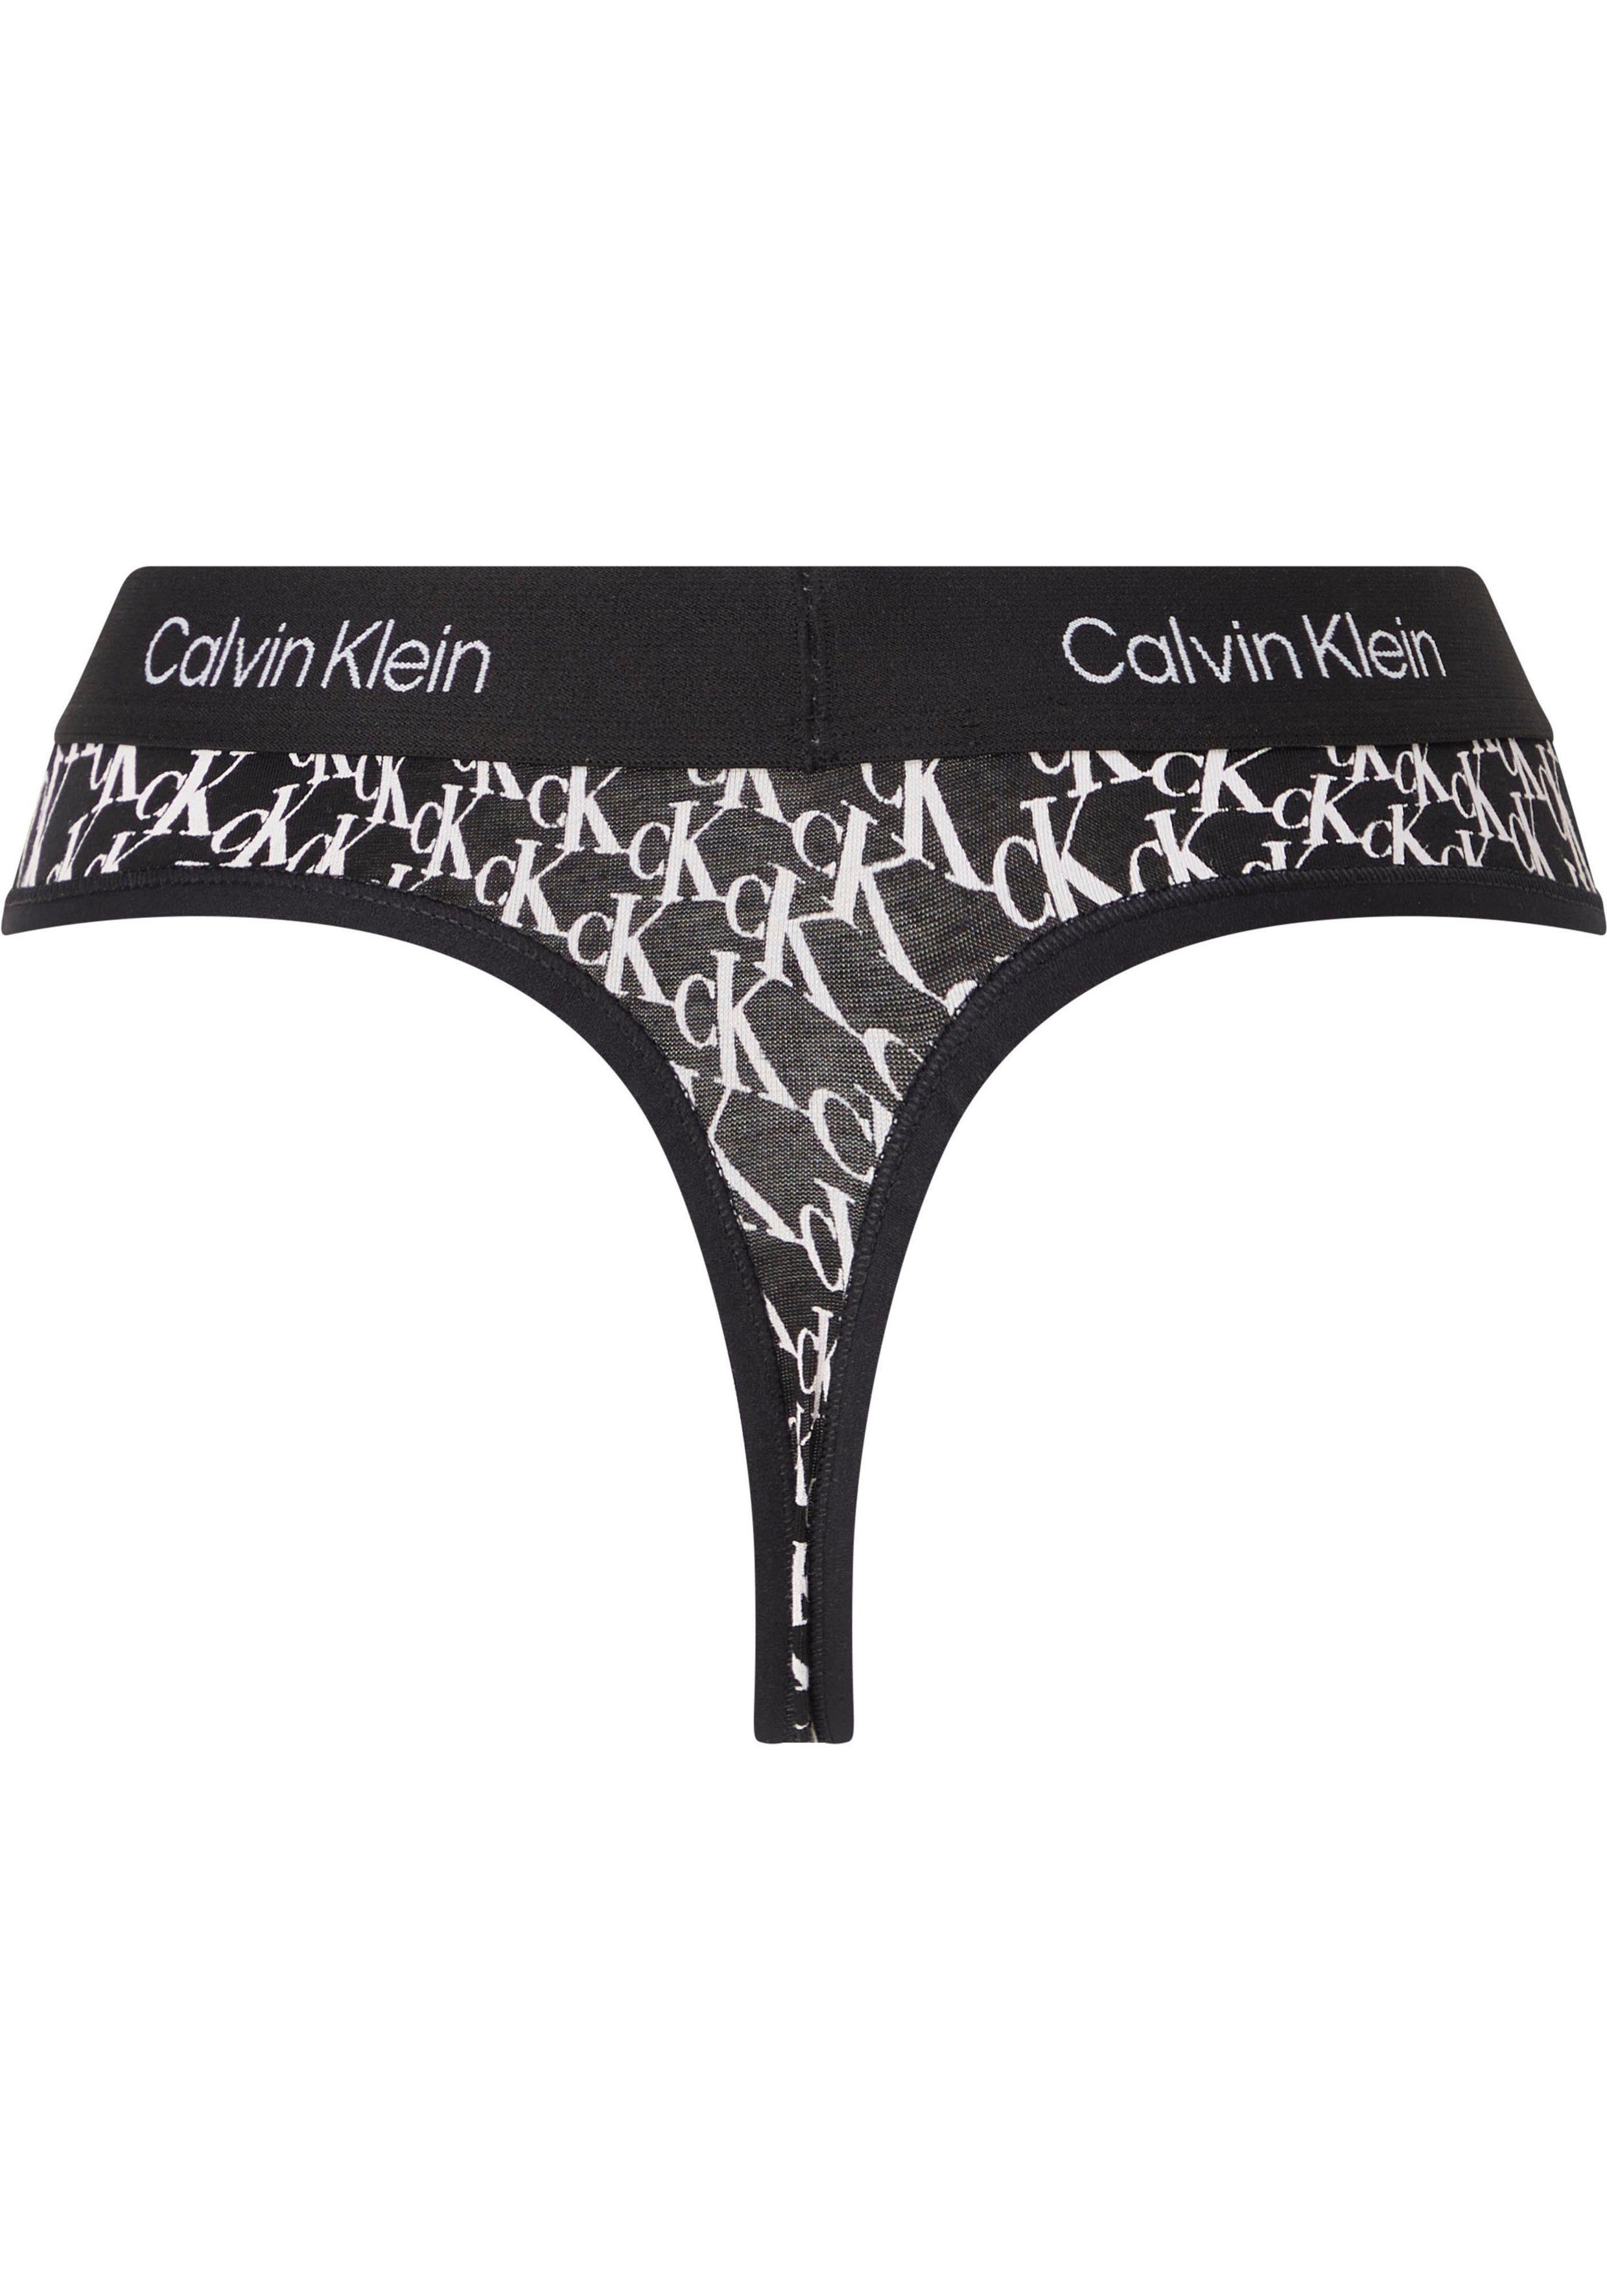 WARPED-LOGO/BLACK Calvin MODERN Alloverprint Underwear mit Klein T-String THONG